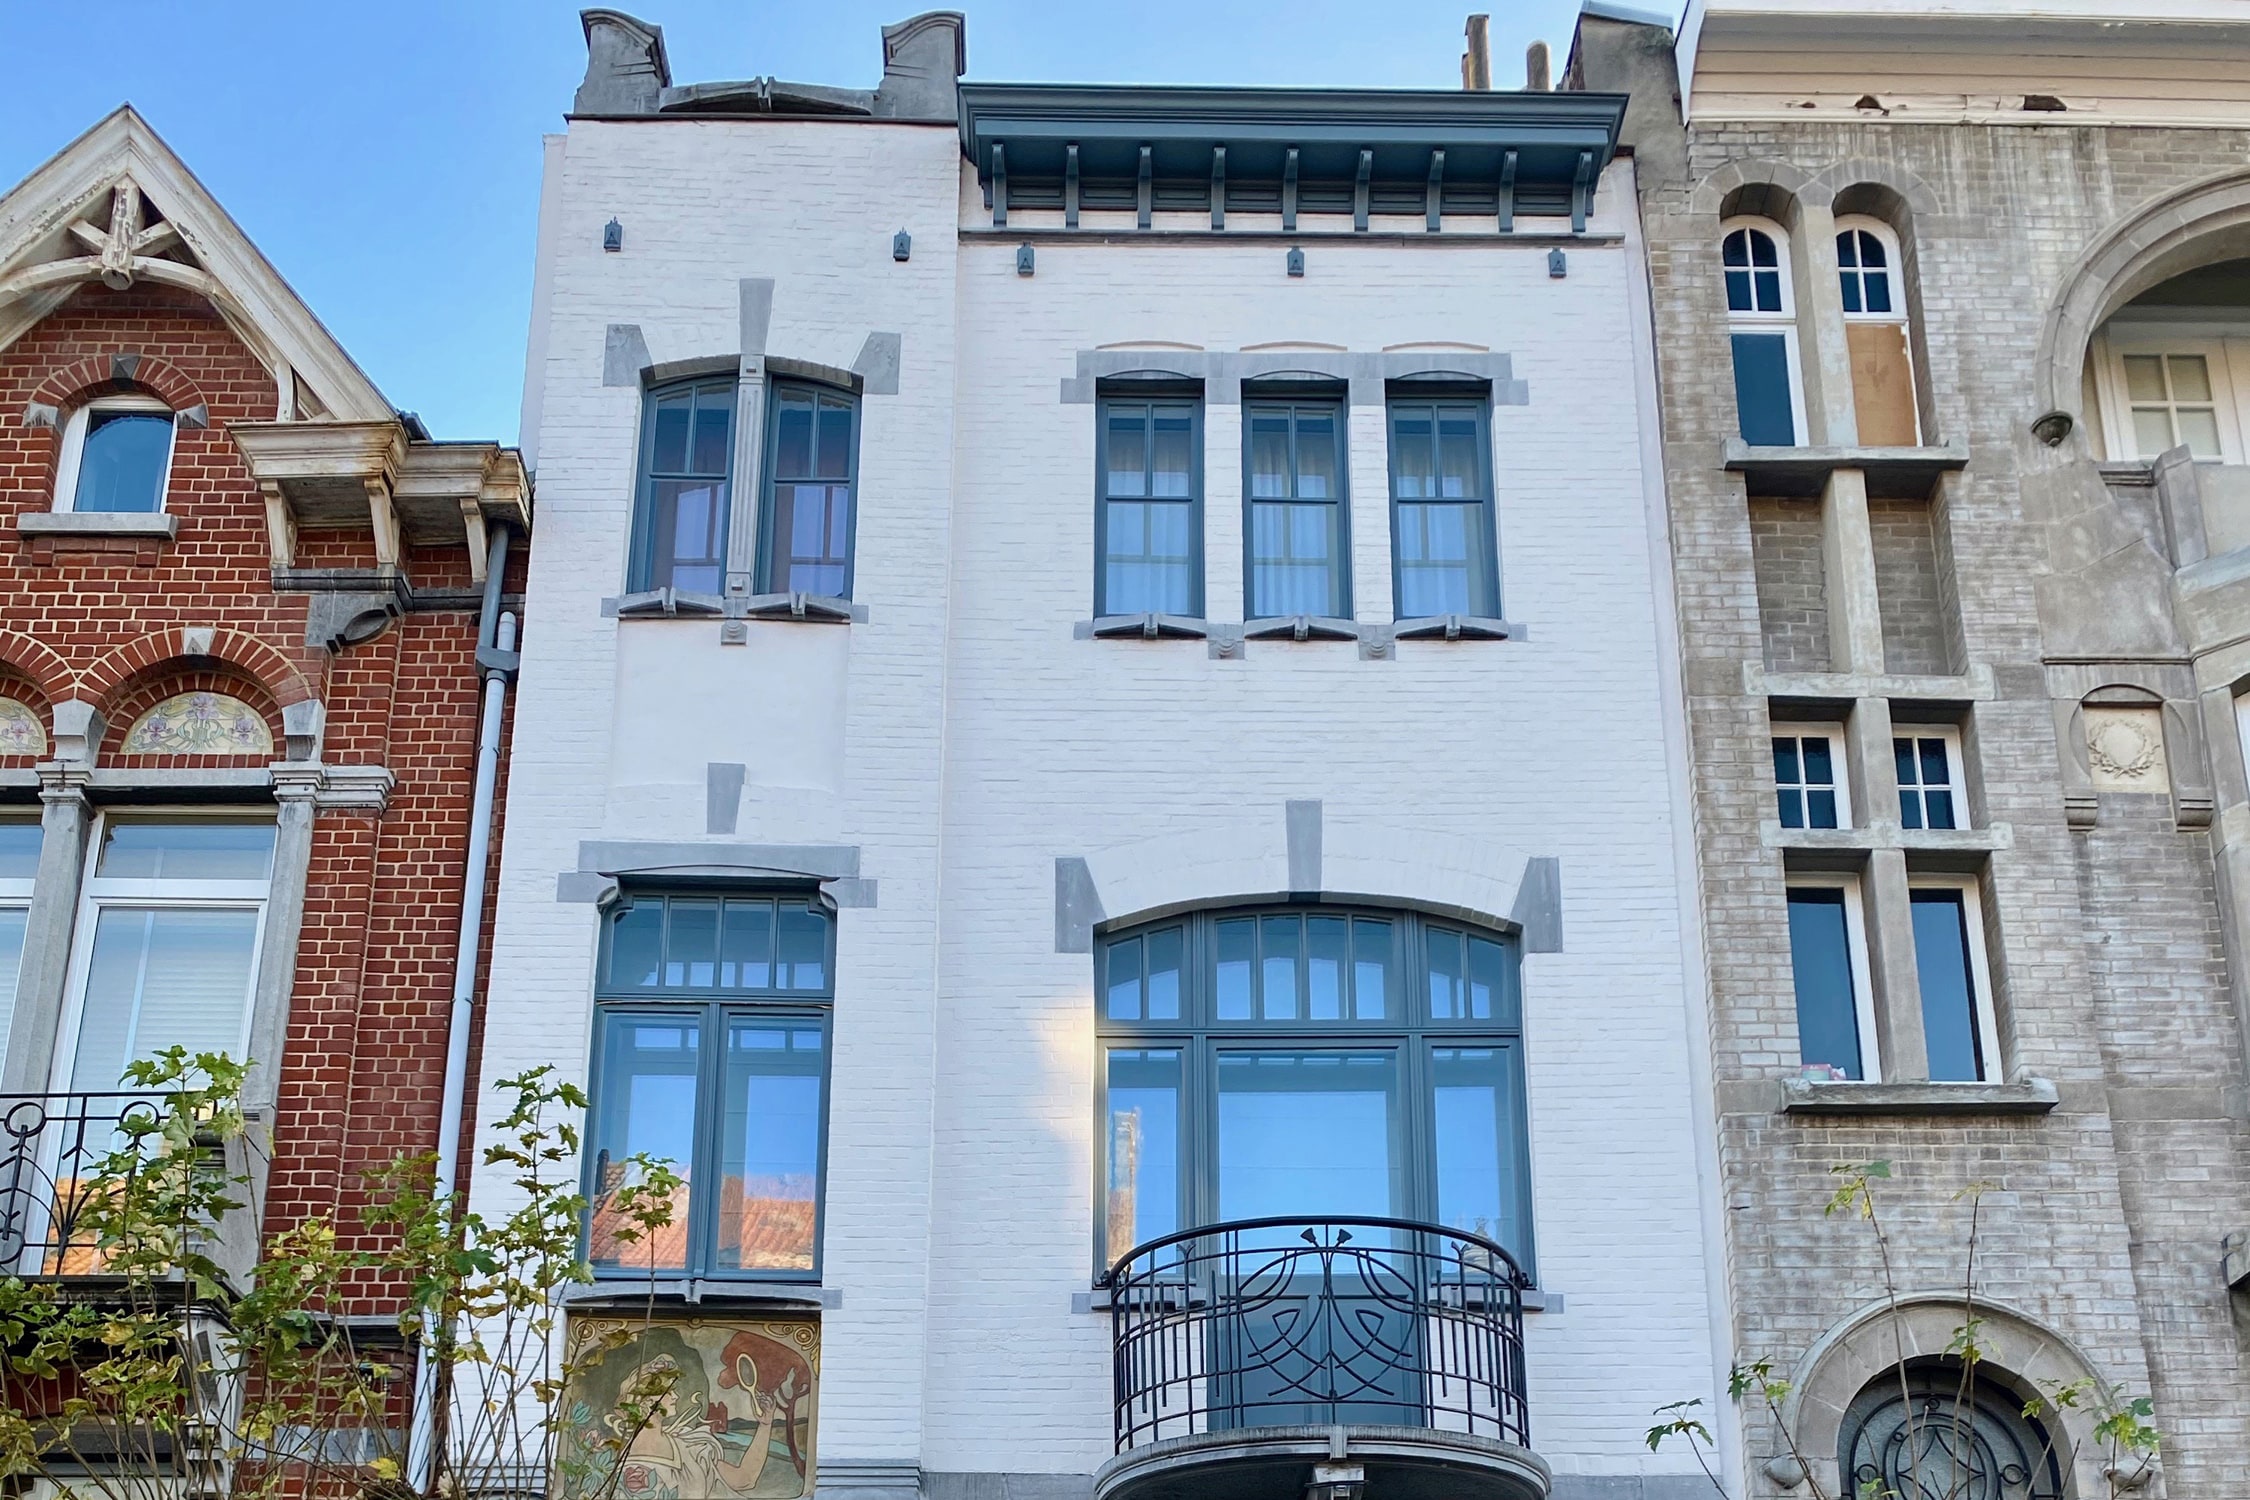 WSL06 Elegant Art Nouveau House